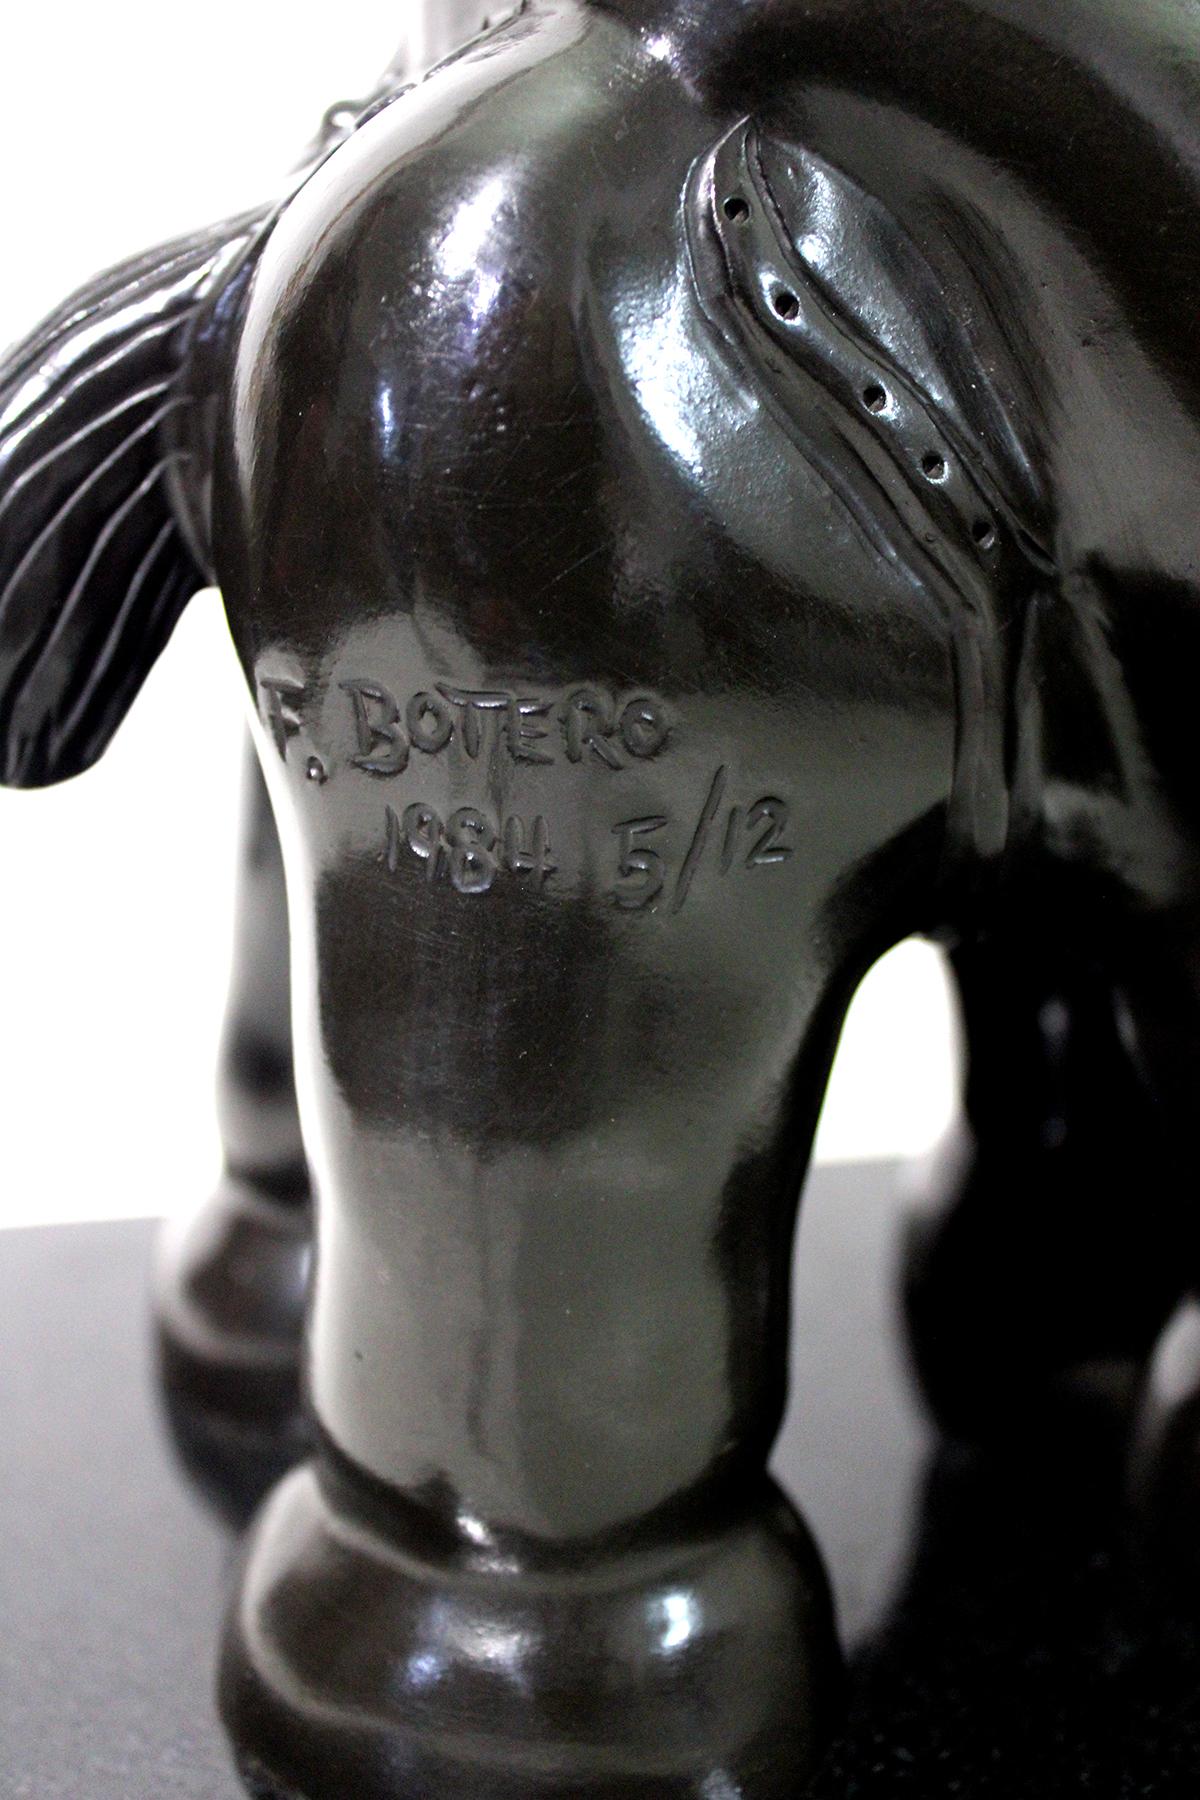 Après Fernando Botero
Sculpture en bronze coulé de Fernando Botero, 1932 à 2023, artiste colombien dont le style caractéristique, également connu sous le nom de Boterismo, représente des personnes et des figures dans de grands volumes exagérés. La